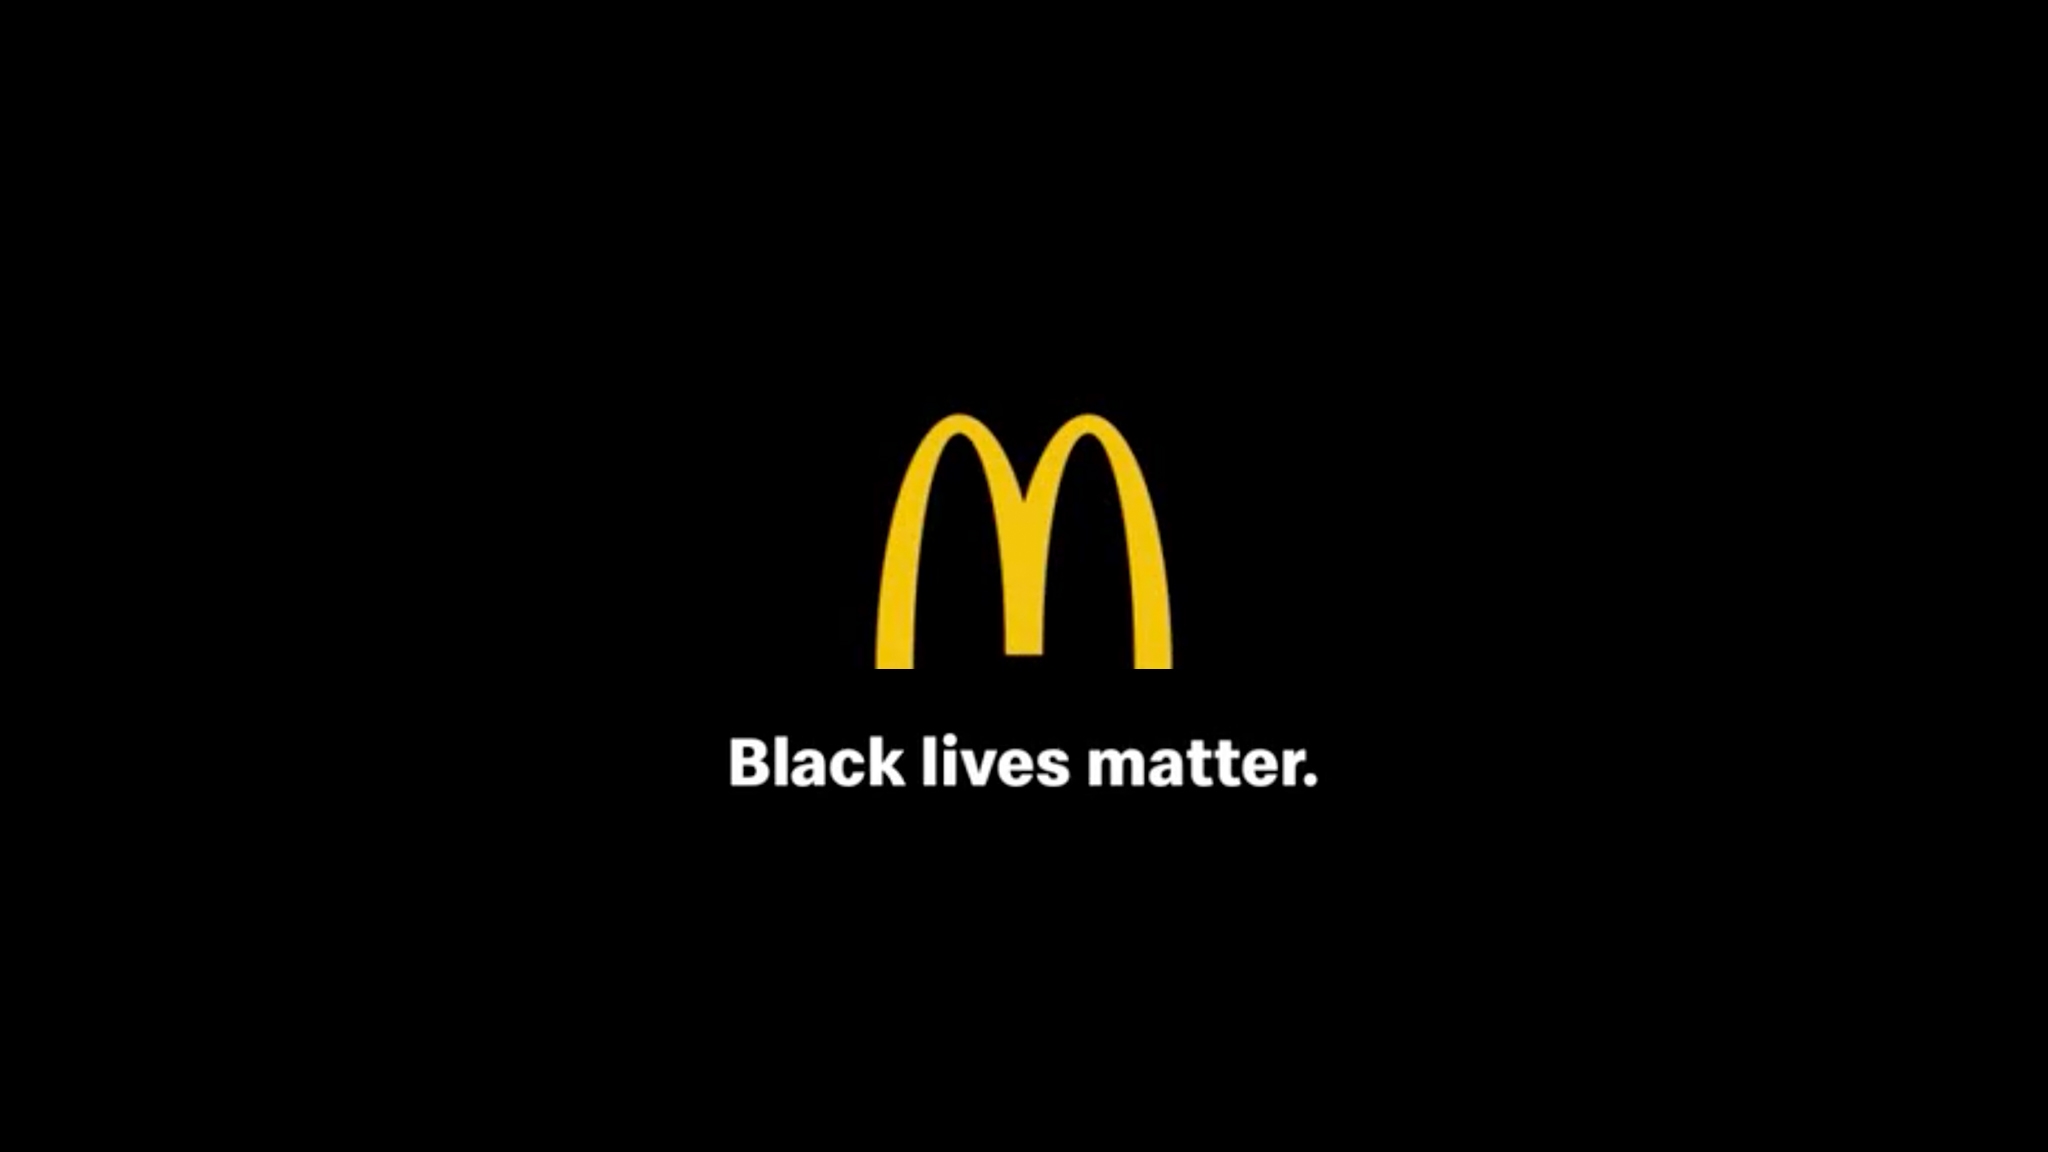 Auch Unternehmen wie McDonald's äußern sich zu "Black Live Matters" - aber wie glaubwürdig ist diese Äußerung? Foto: McDonalds_Twitter/ Collage MEEDIA